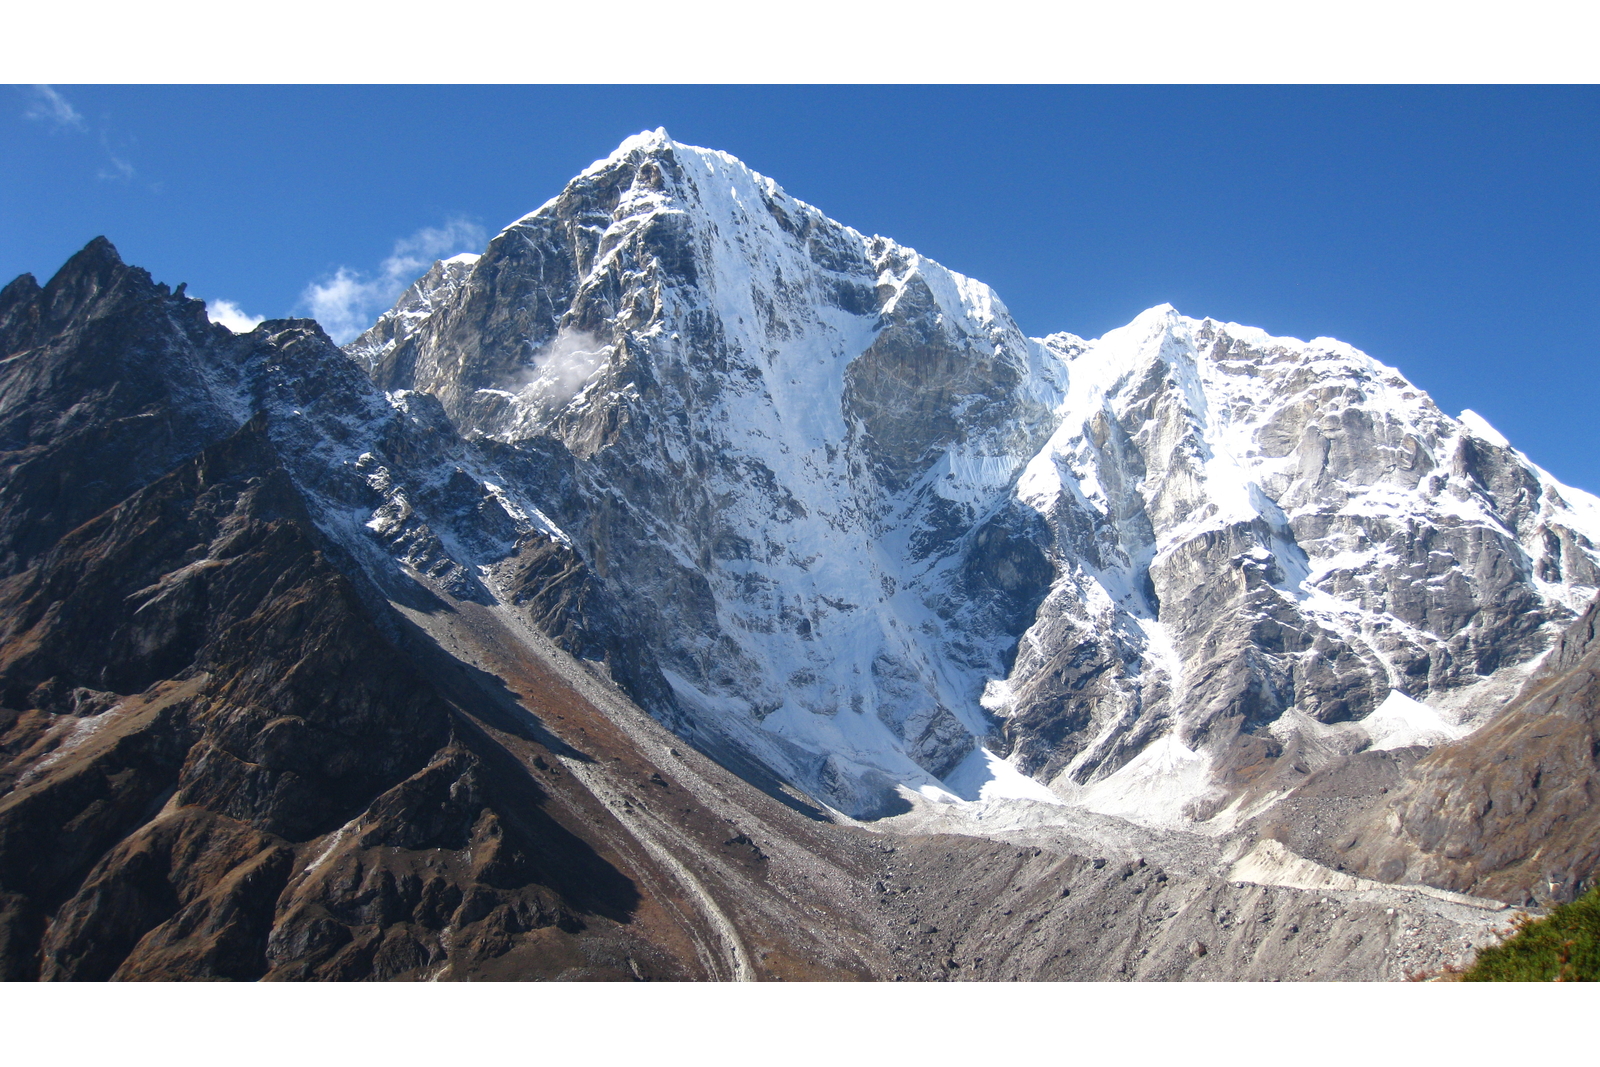 Everest Luxury Trek, EBC Luxury Trekking, Luxury Trekking at Mt